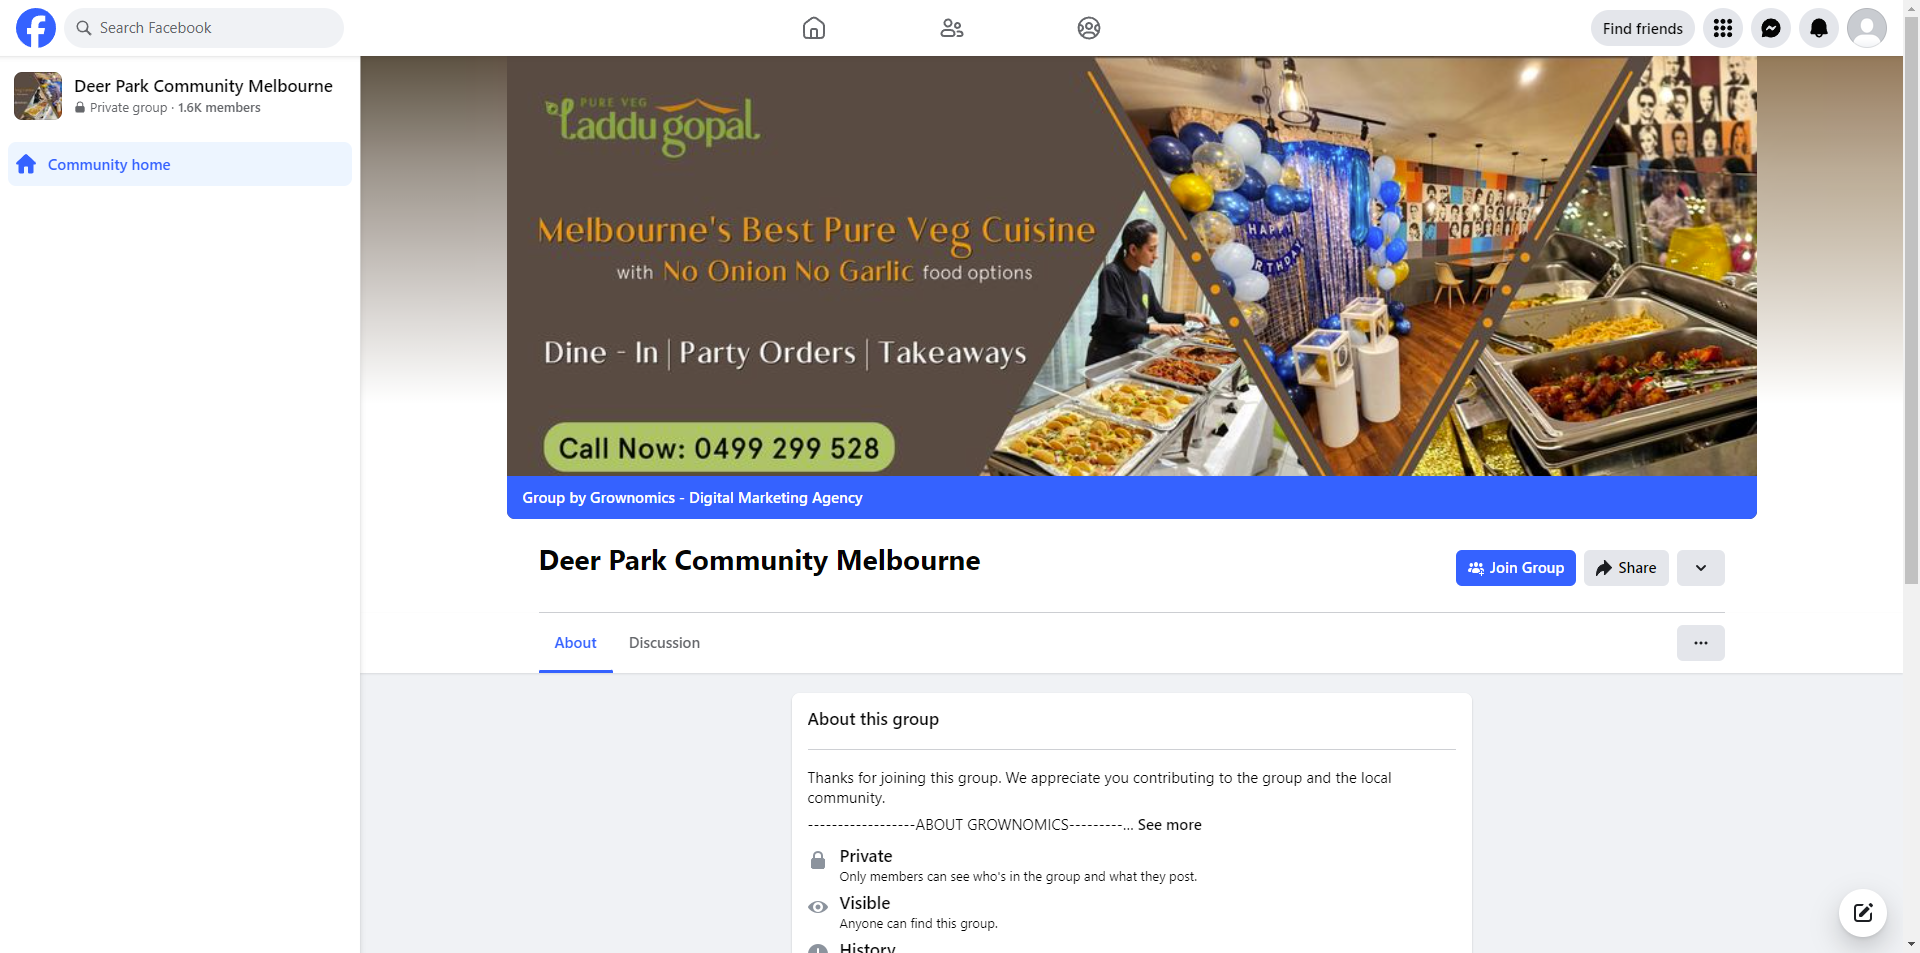 Deer Park Community Melbourne